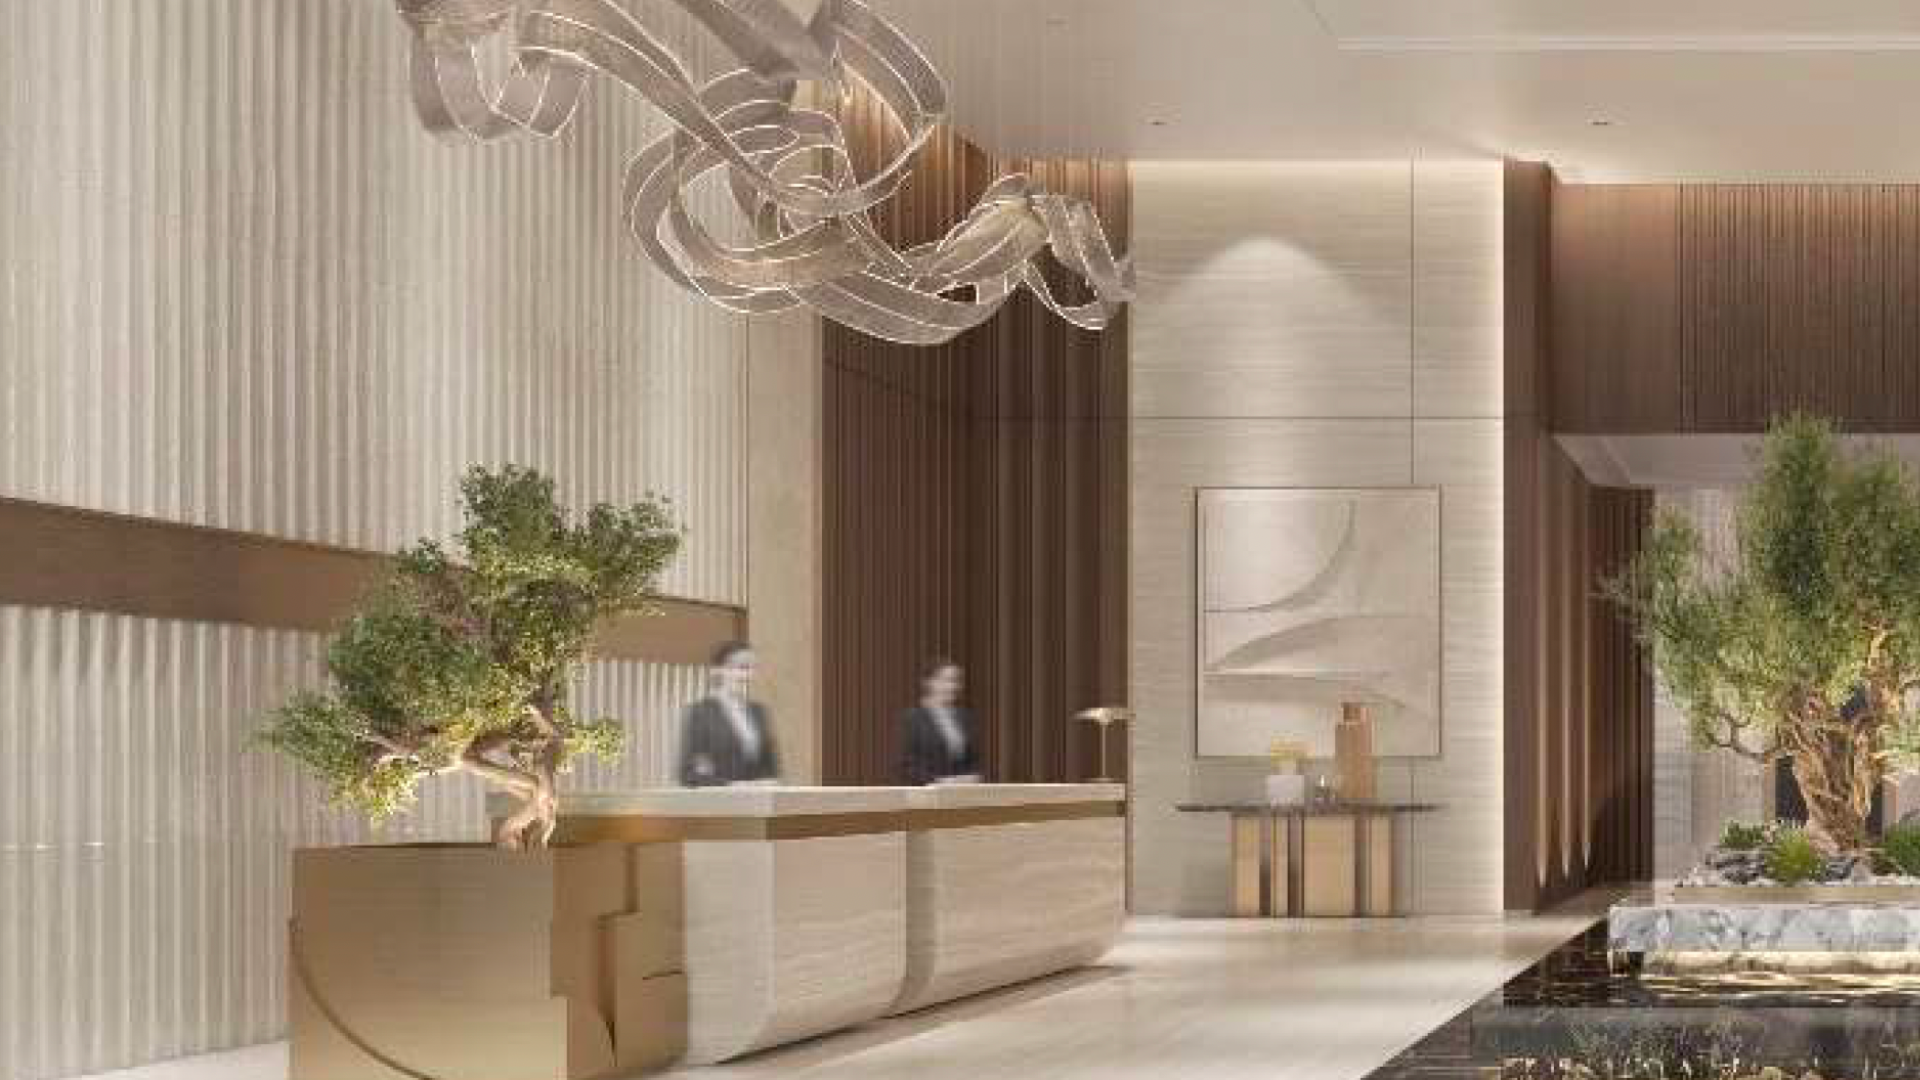 Lobby d'hôtel moderne avec un design intérieur élégant comprenant un grand luminaire sinueux, des panneaux en bois et un bureau de réception. Des chiffres flous indiquent un mouvement. Il y a de petits arbres et une œuvre d'art sur le mur qui rappelle le style des villas de Dubaï.